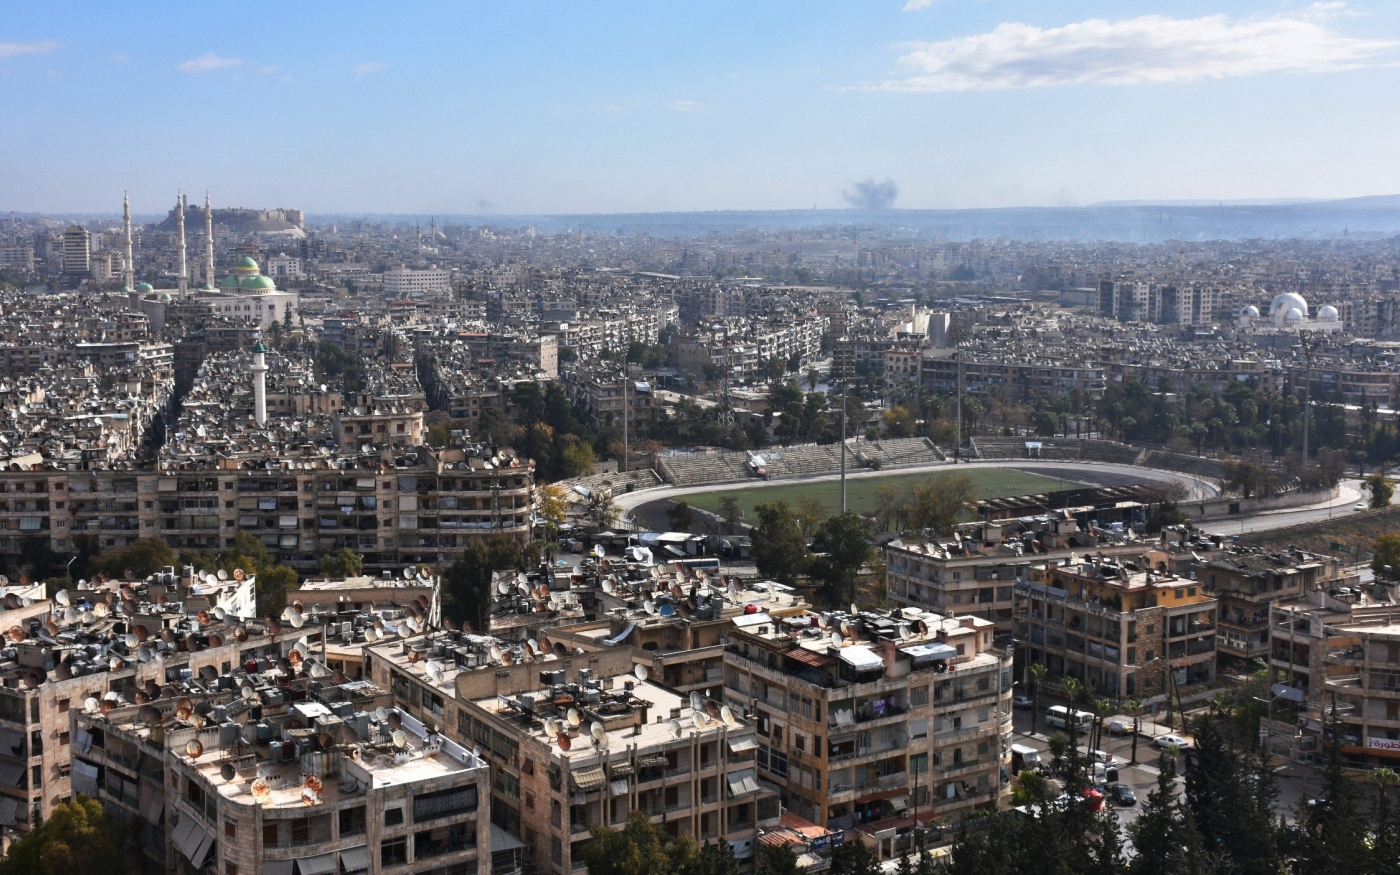 Vue de citadelle historique d’Alep et d’un stade municipal, alors que de la fumée s’élève en arrière-plan au cours de combats entre les forces gouvernementales syriennes et les combattants rebelles, le 3 décembre 2016 (AFP)